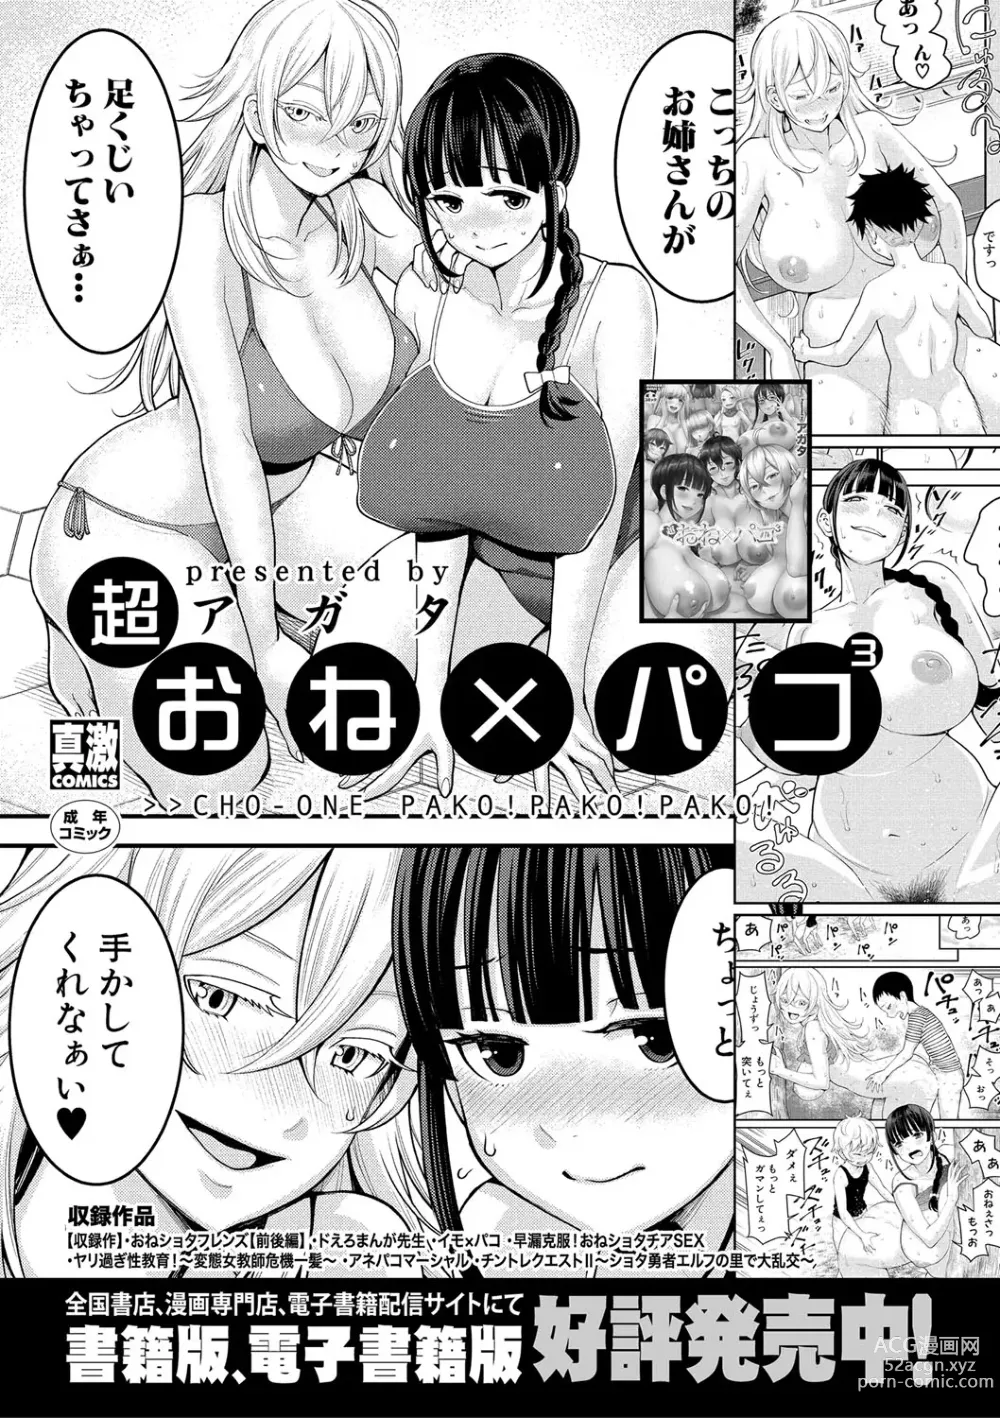 Page 188 of manga Quiero ser tu madre